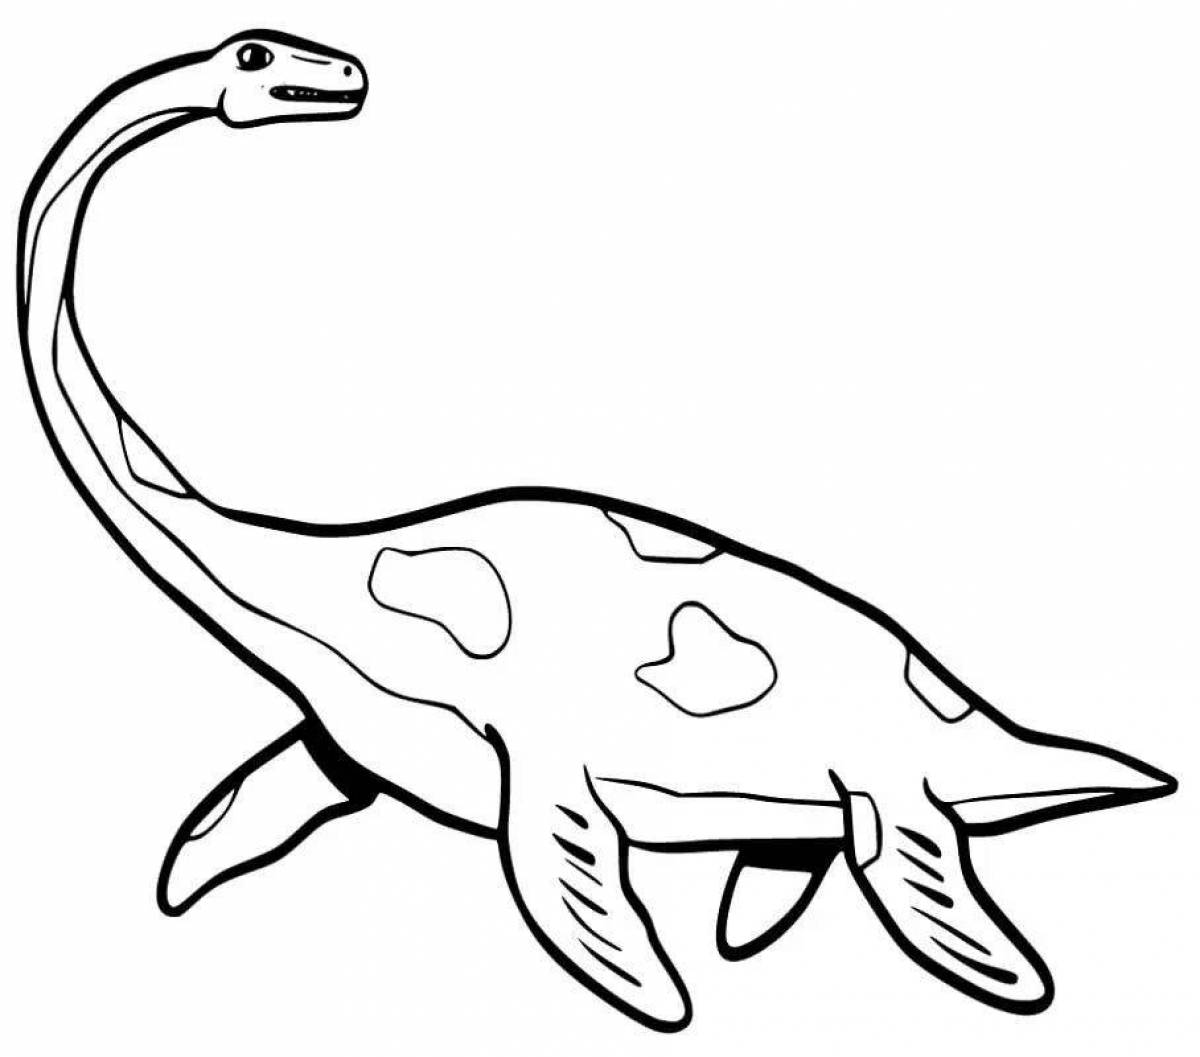 Подробная раскраска плезиозавра